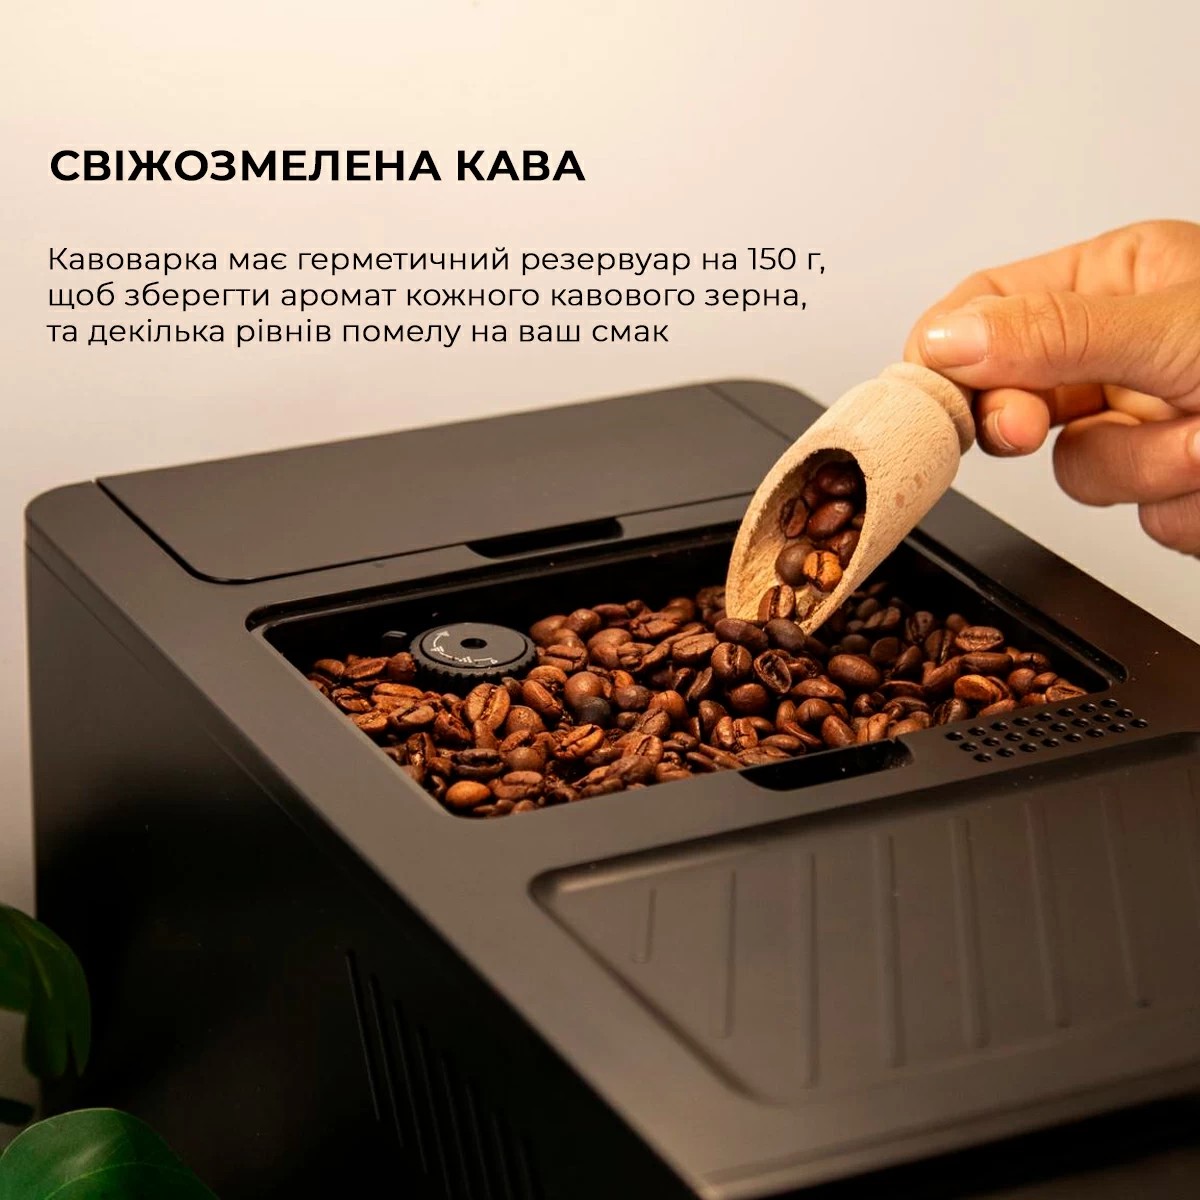 Кофемашина Cecotec Cremmaet Compactccino Black-Silver (CCTC-01800) отзывы - изображения 5